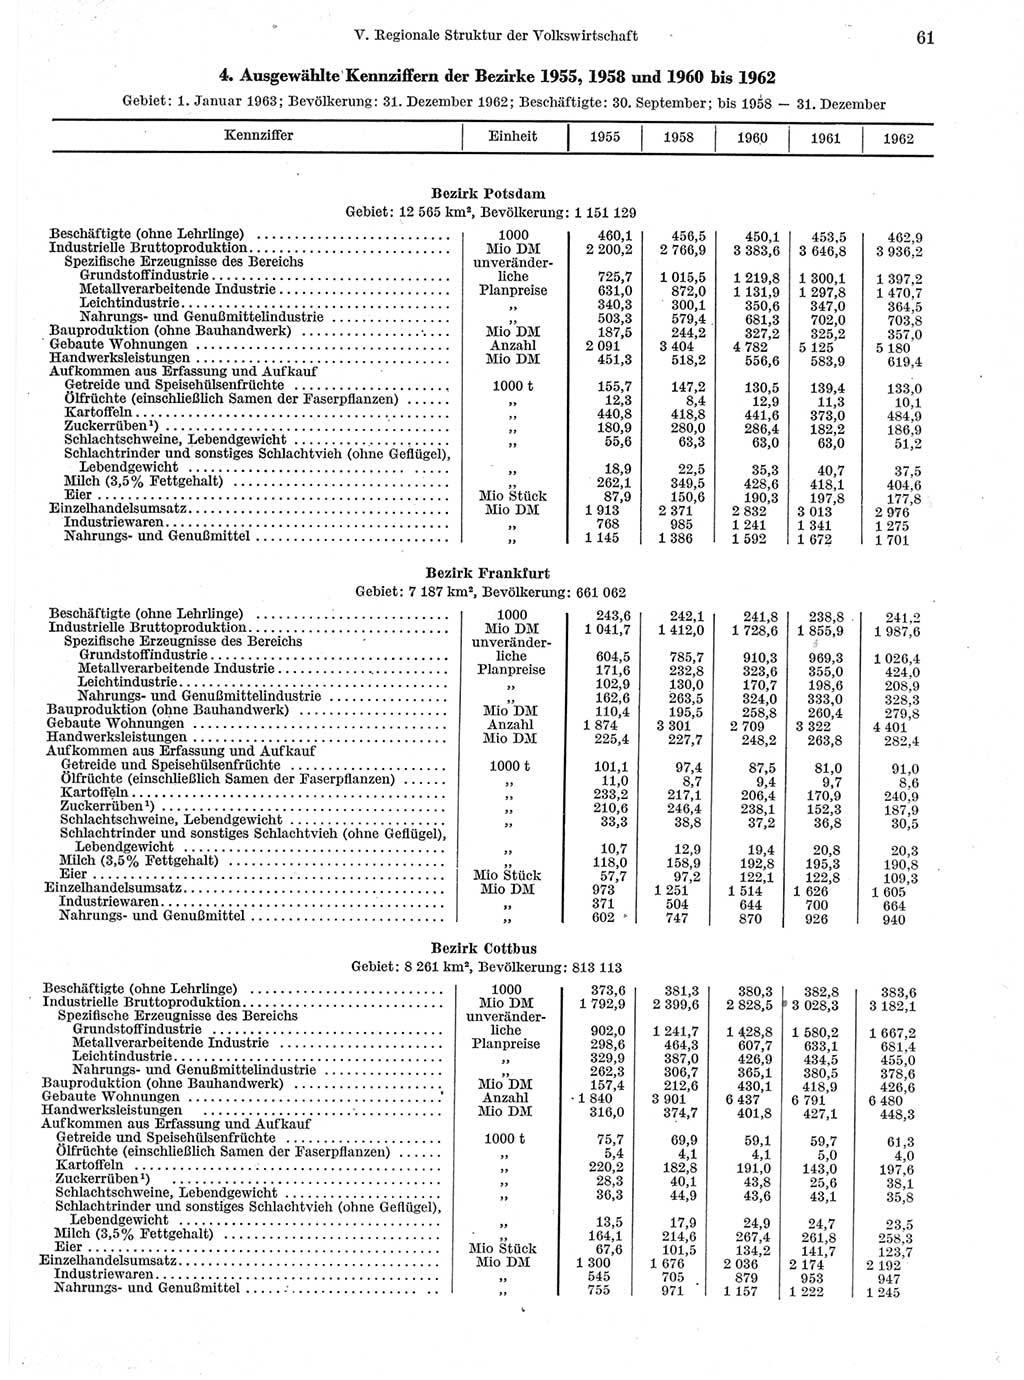 Statistisches Jahrbuch der Deutschen Demokratischen Republik (DDR) 1963, Seite 61 (Stat. Jb. DDR 1963, S. 61)